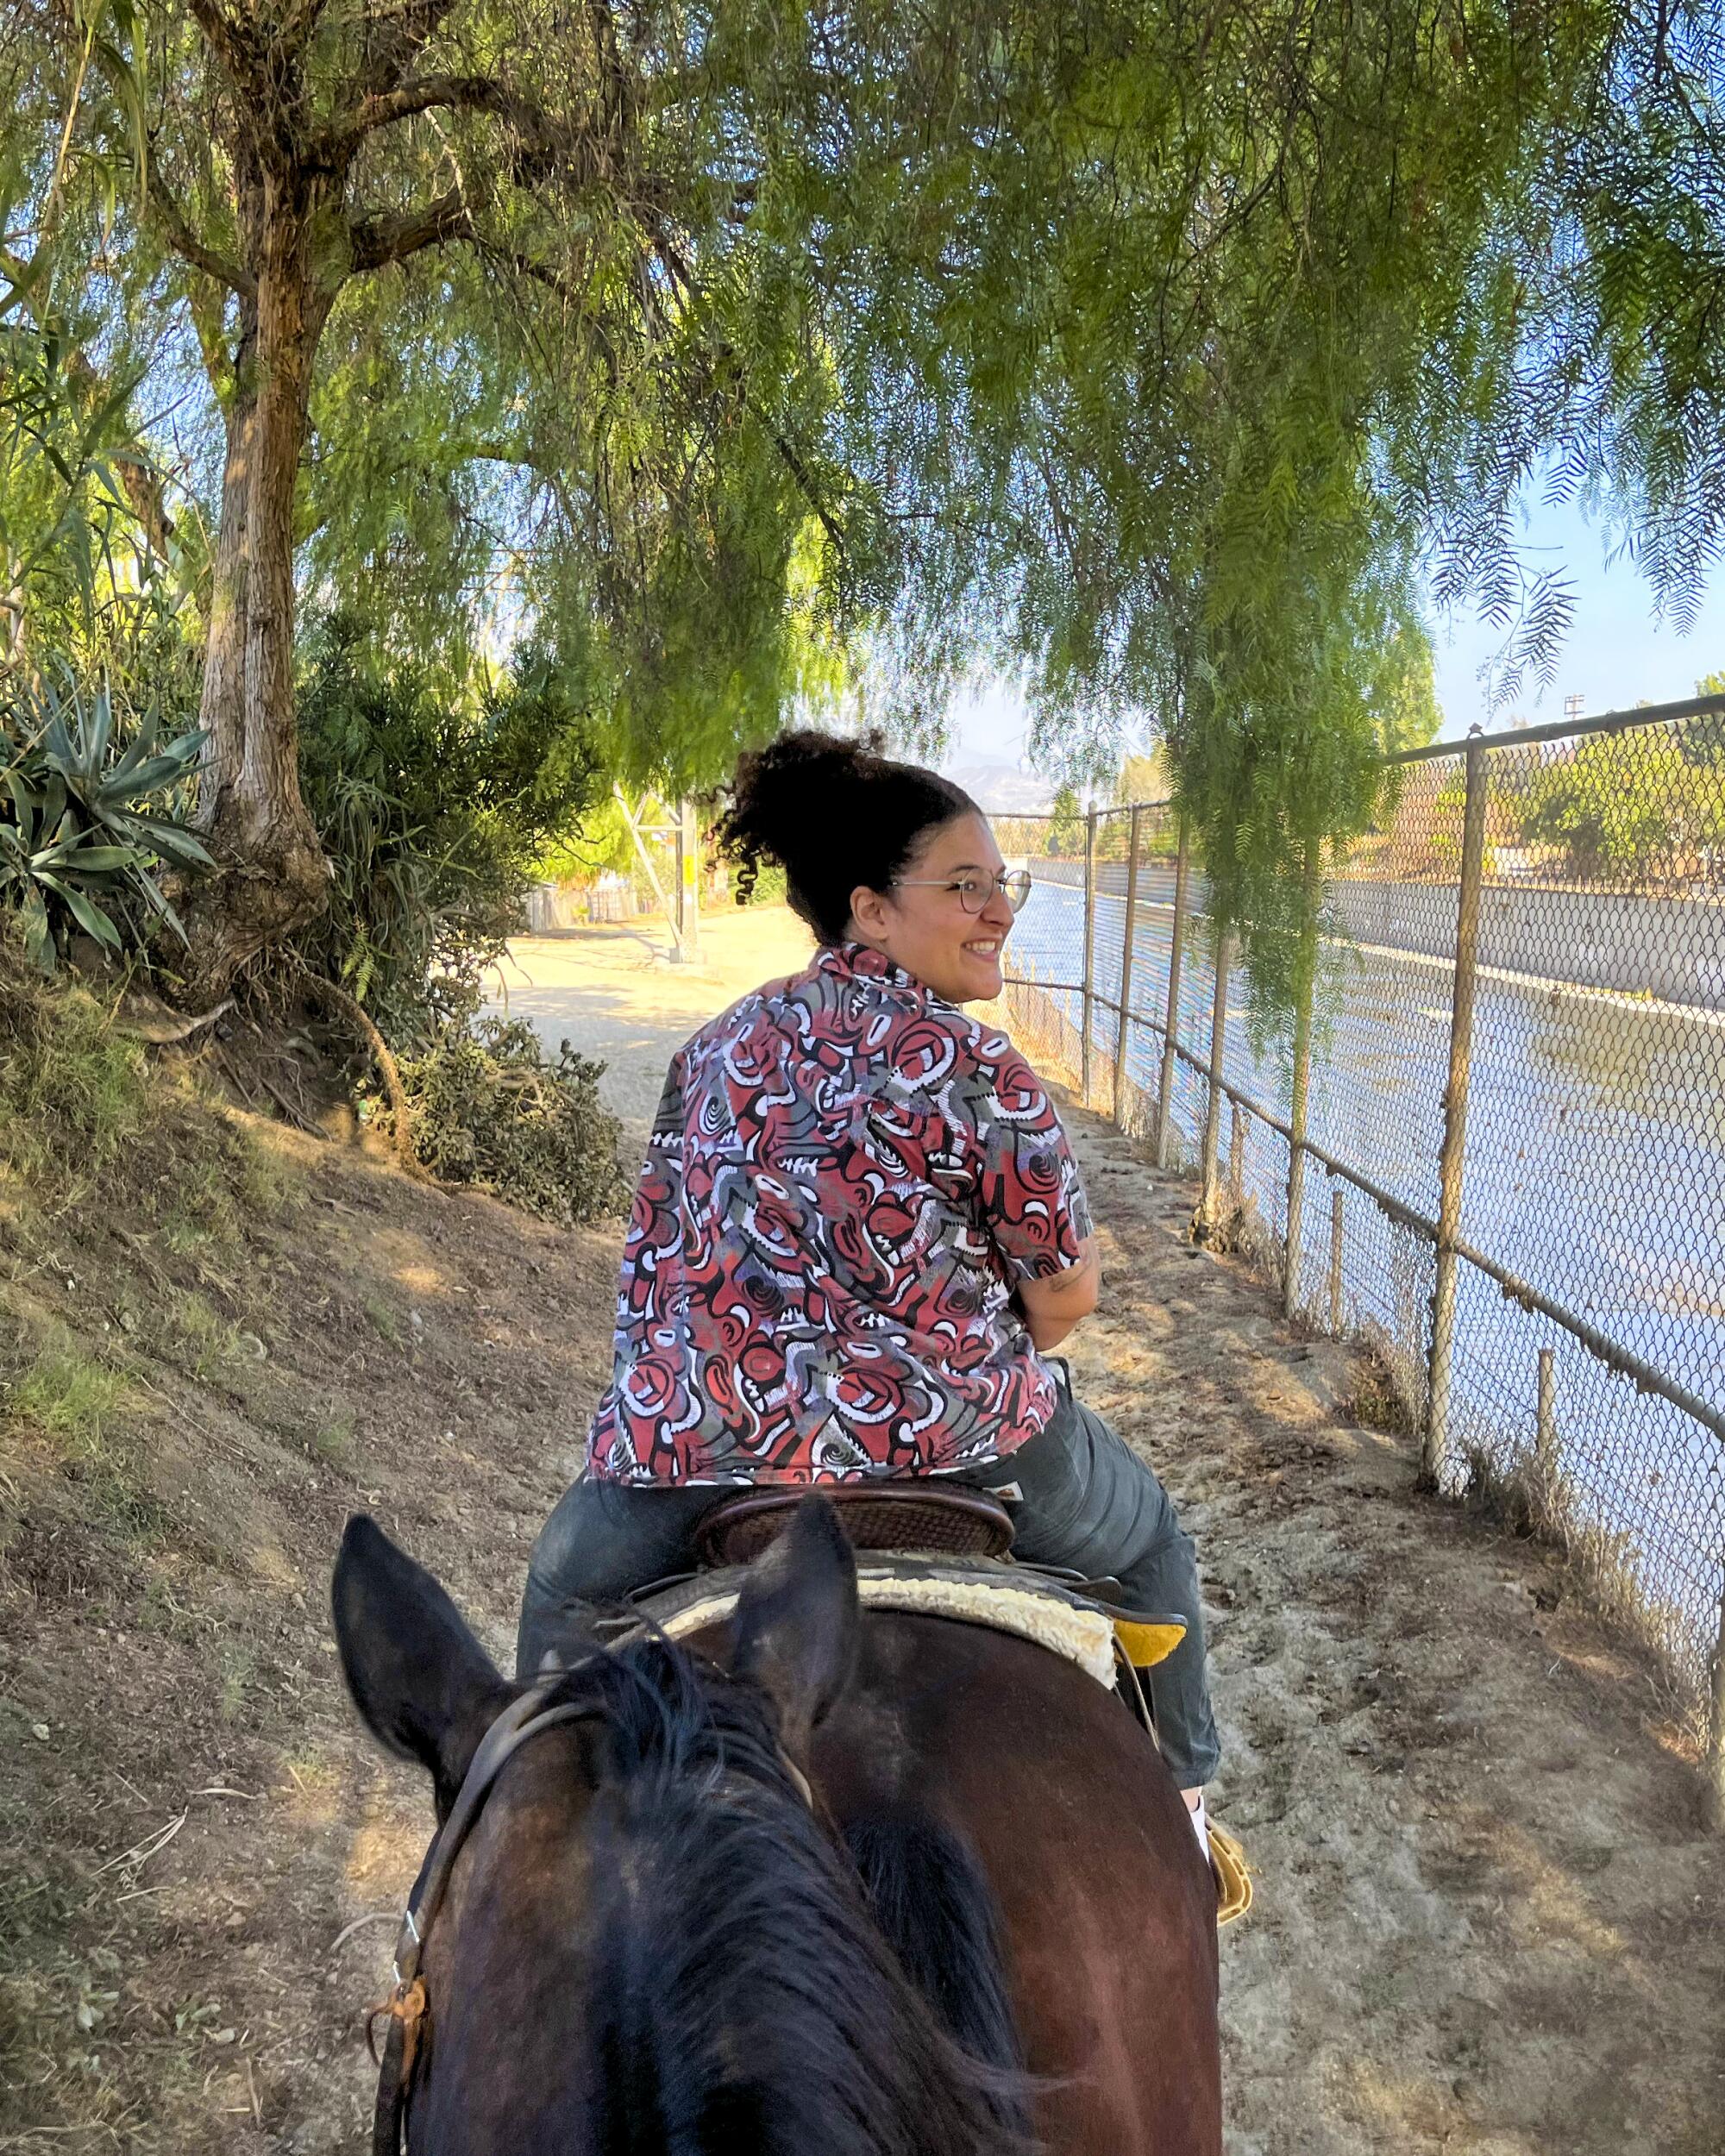 A person rides a horse with LA Horse Rentals.